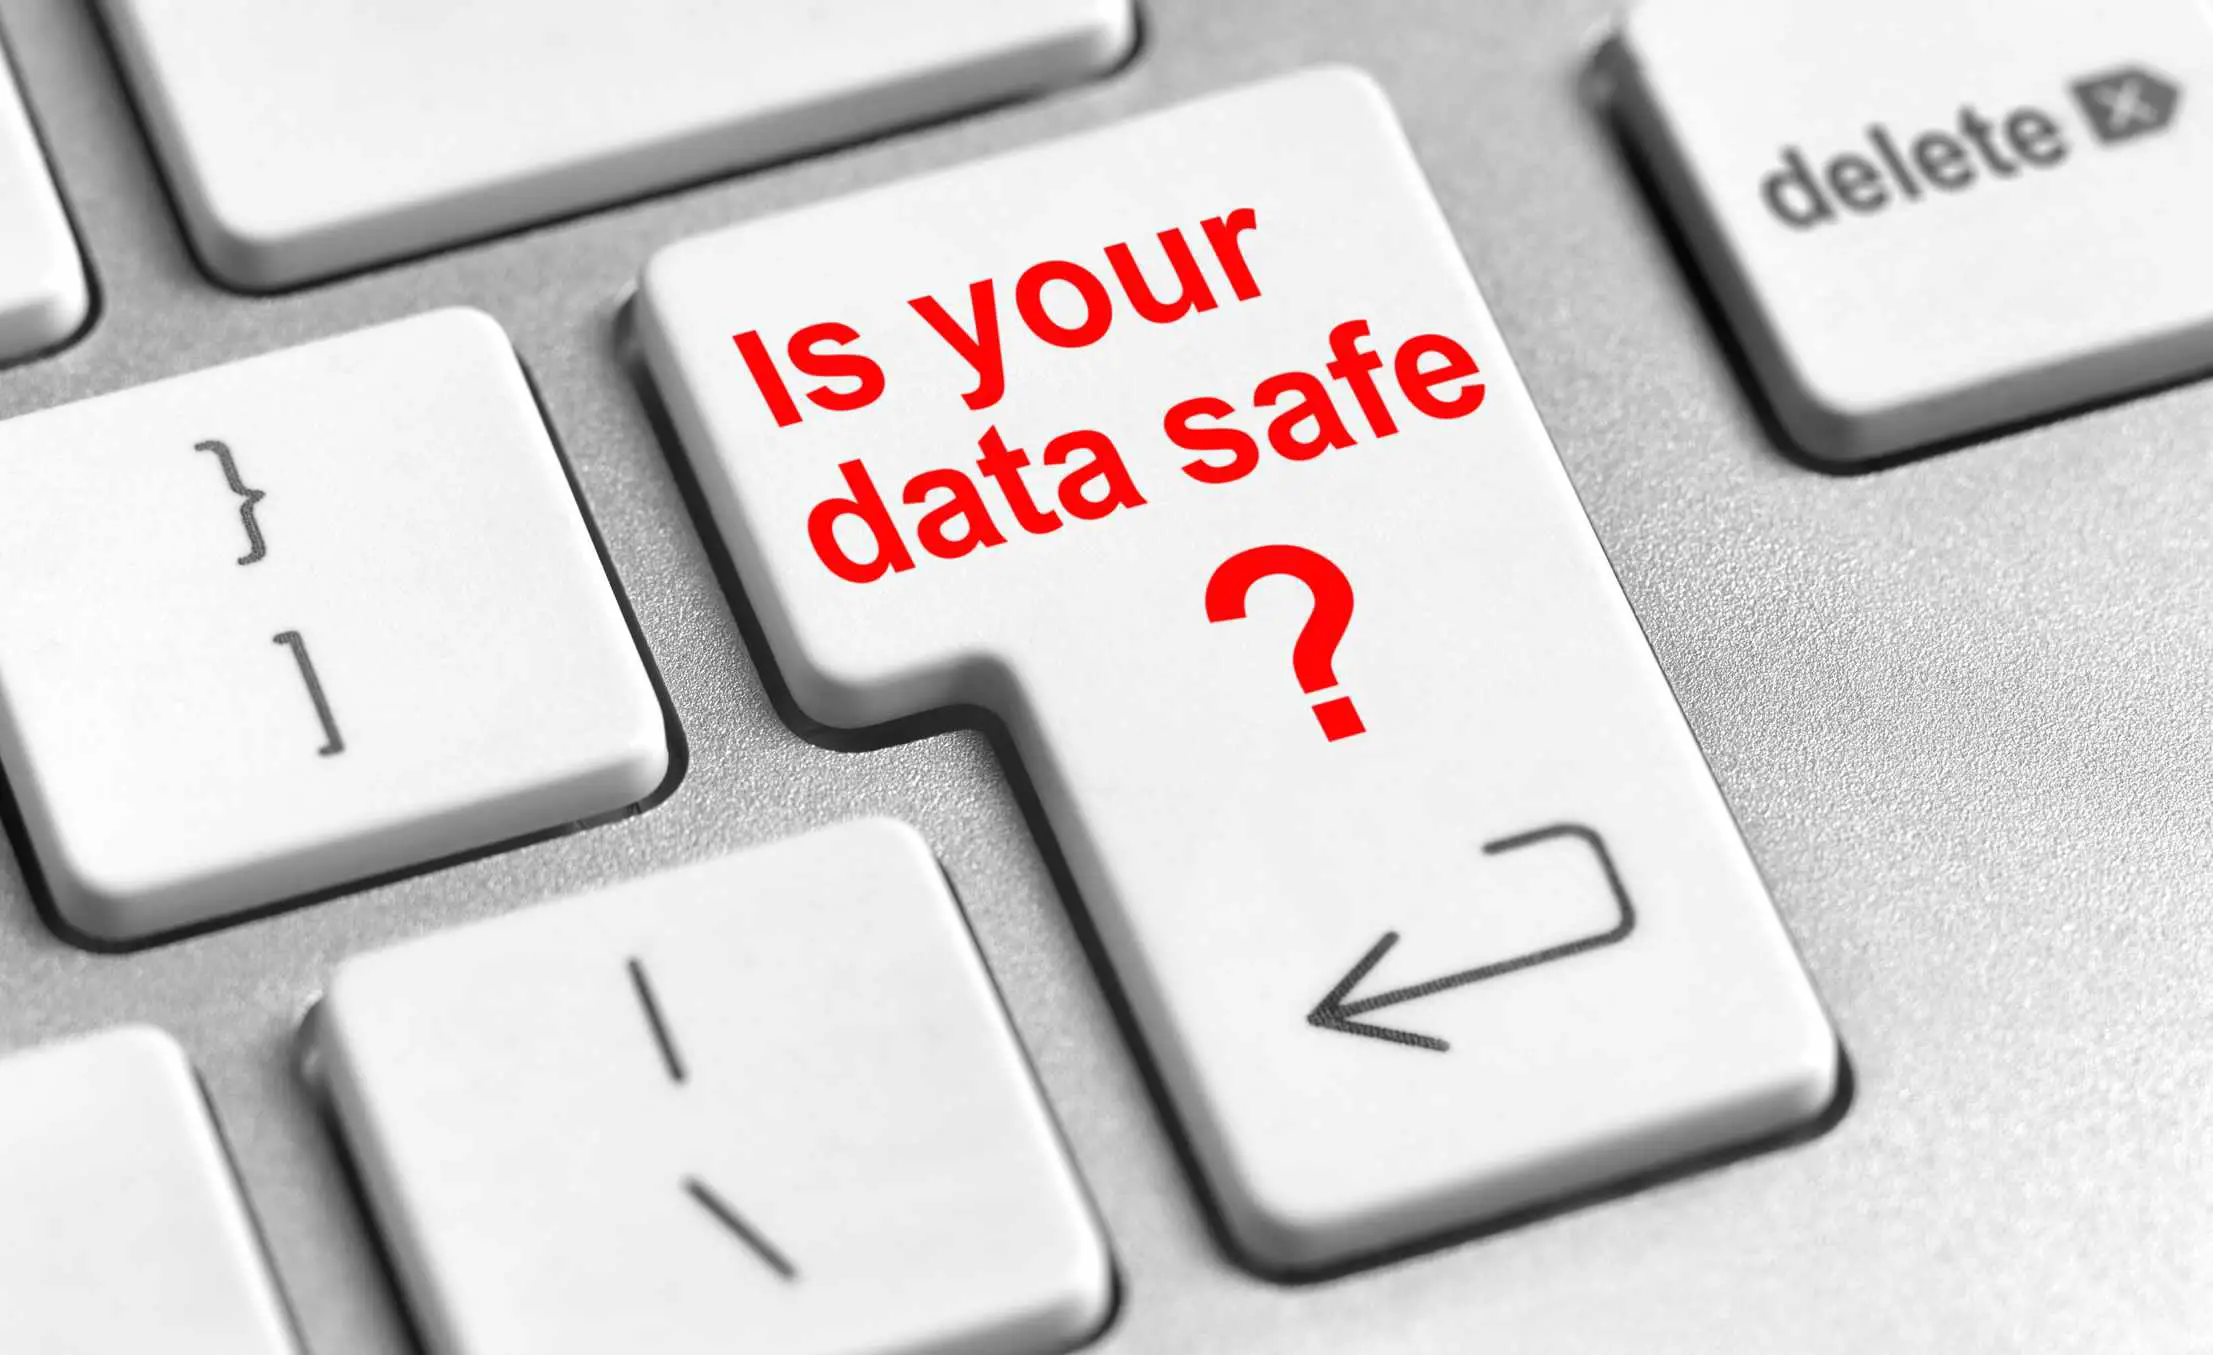 Uma tecla de teclado com a pergunta "Seus dados são seguros" gravada em letras vermelhas.